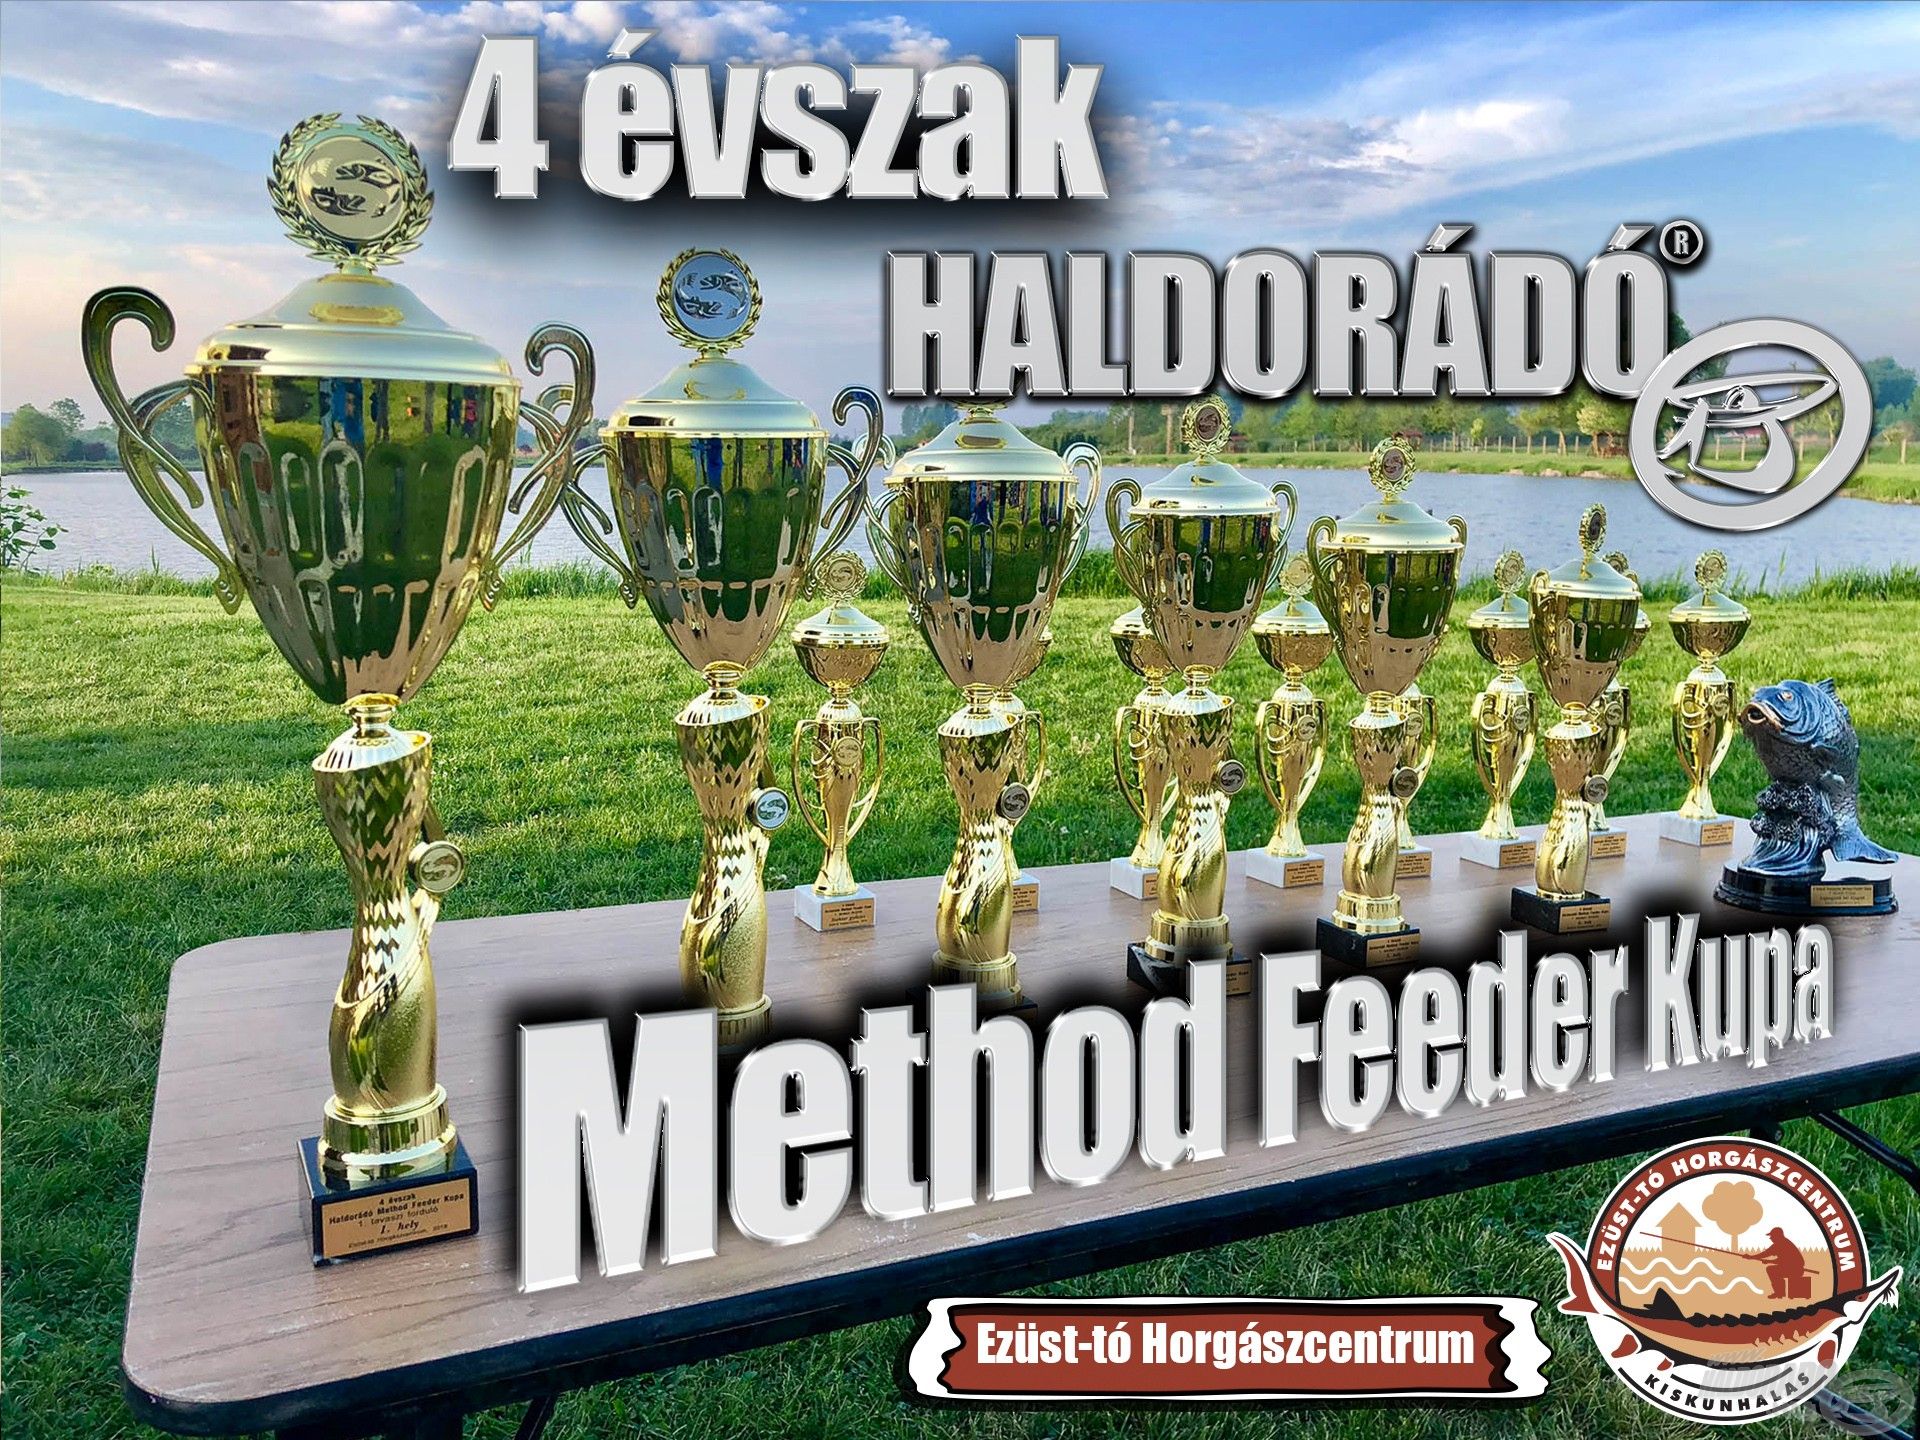 4 évszak Haldorádó Method Feeder Kupa 2021 versenysorozat kiírás - Tél, záró forduló